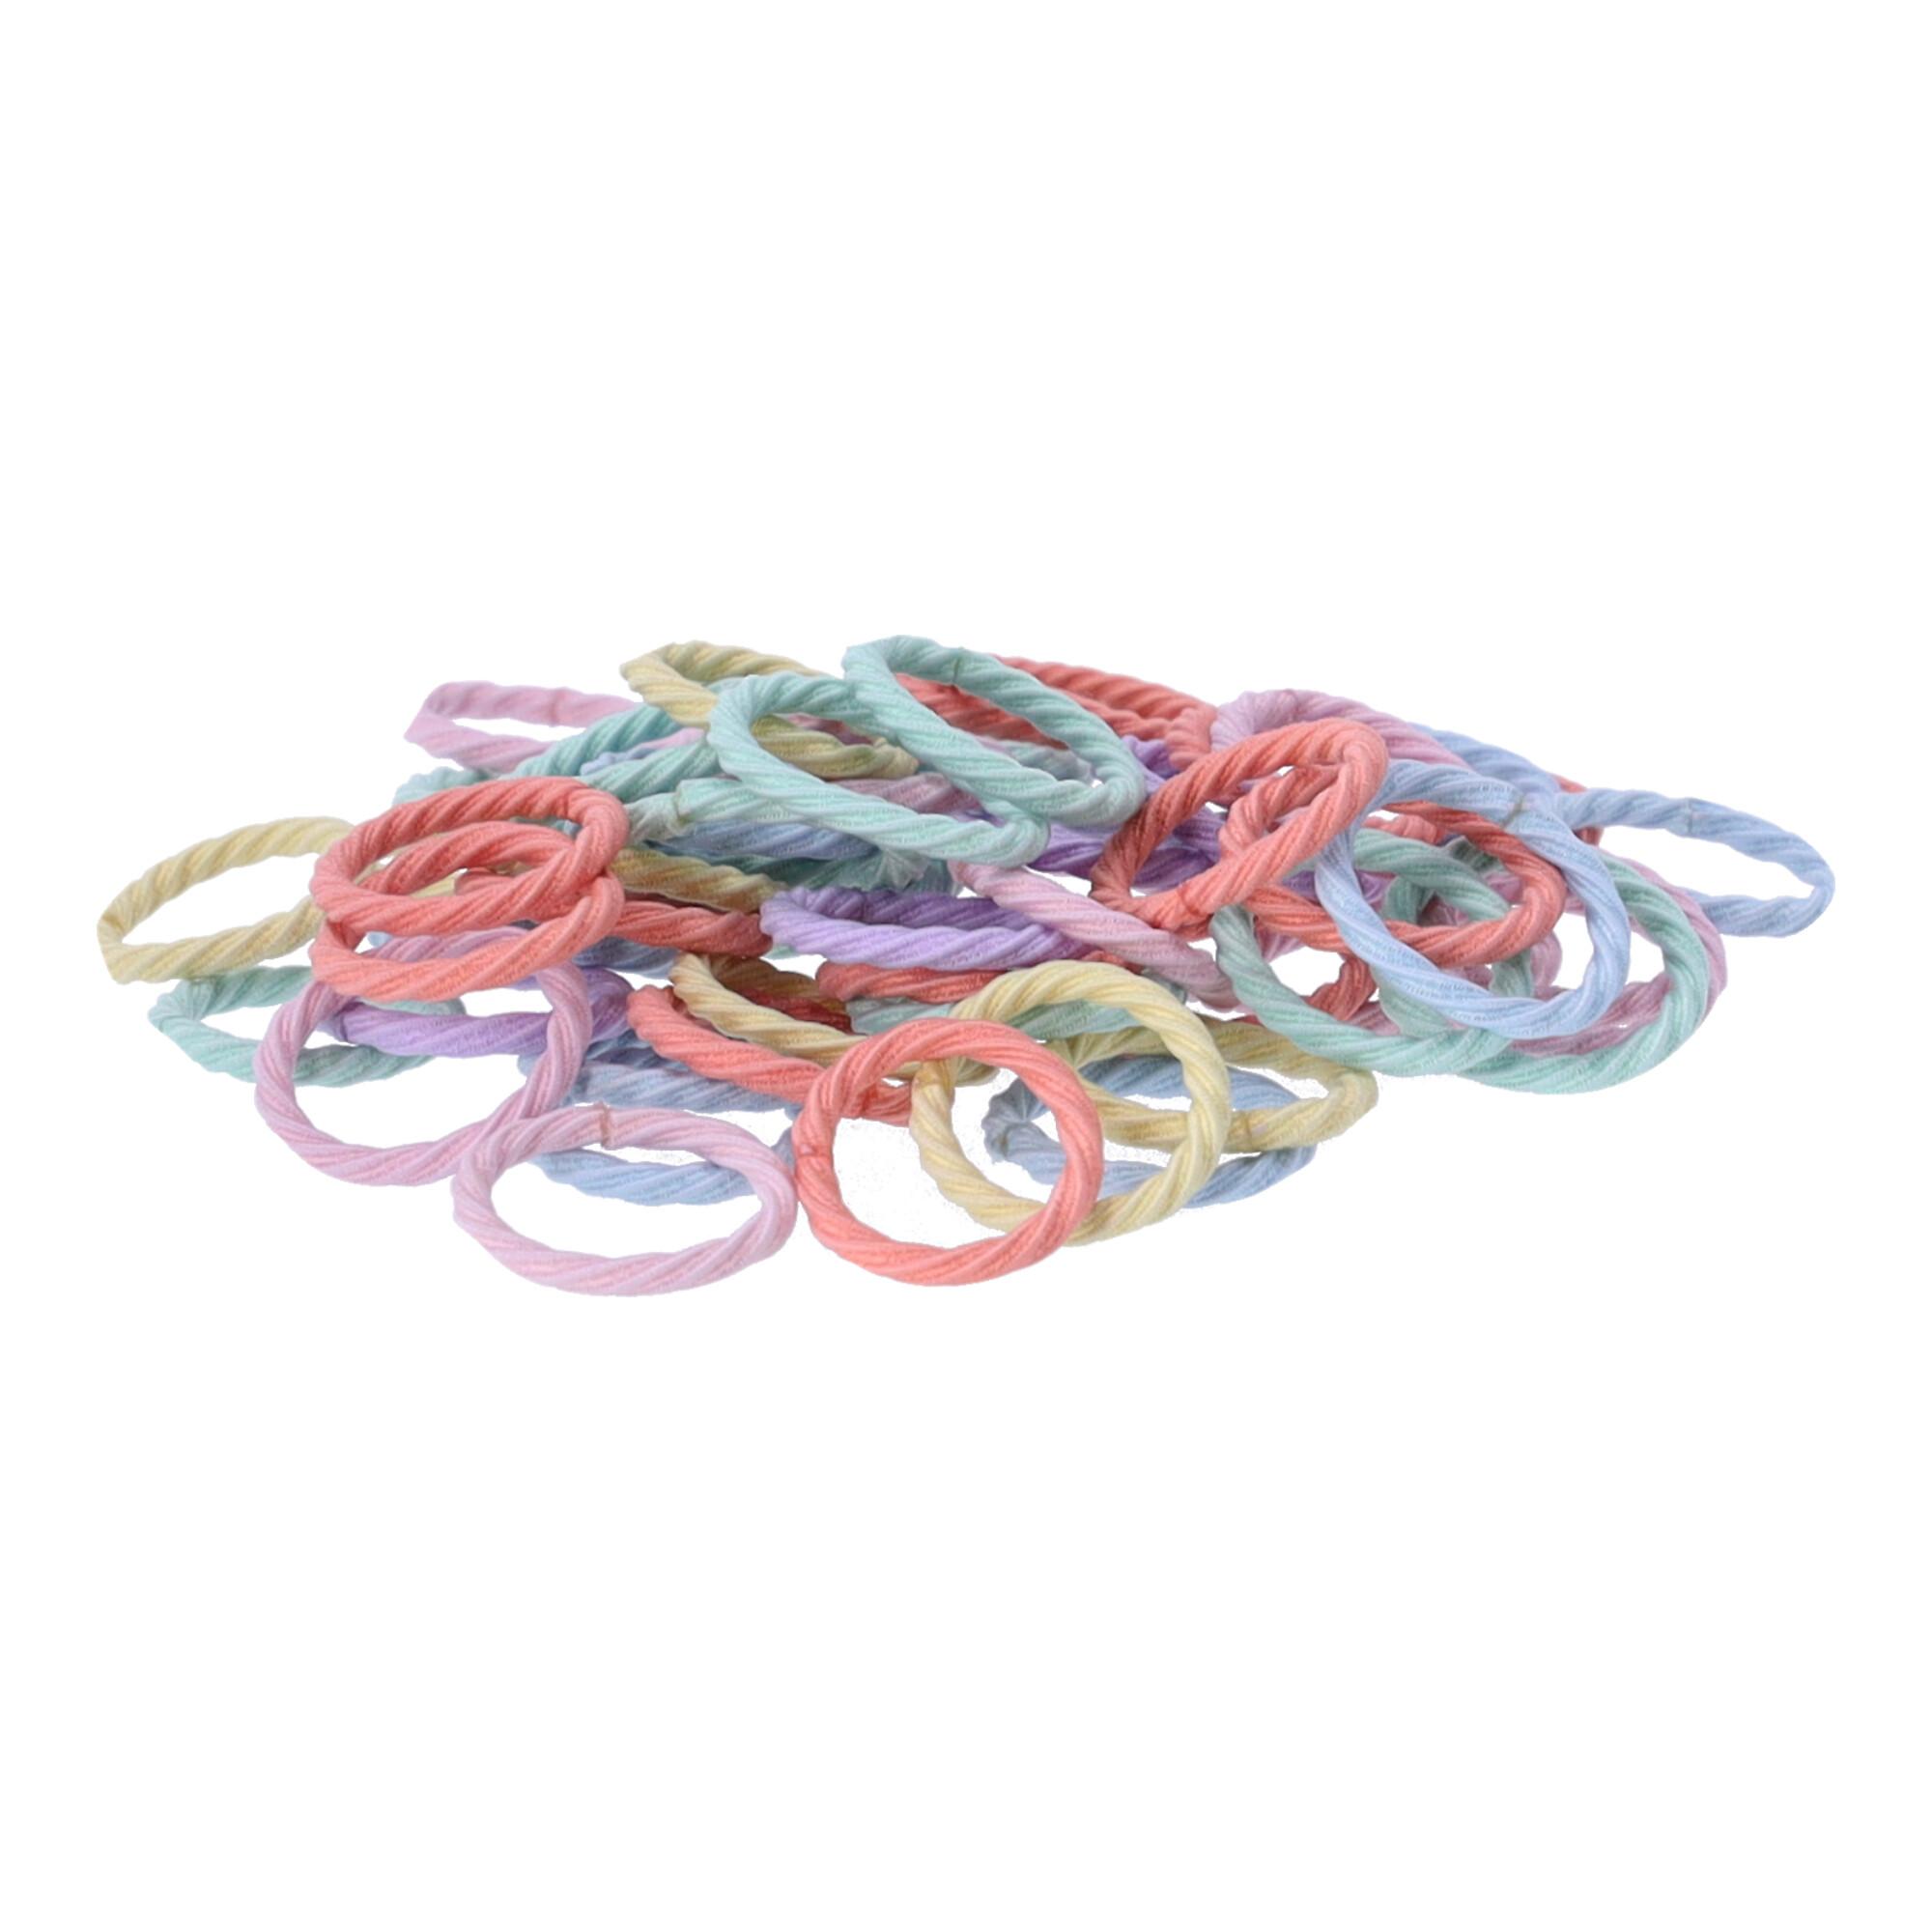 Set of elastic hair elastics 300 pcs. - pastel type II, mix colors